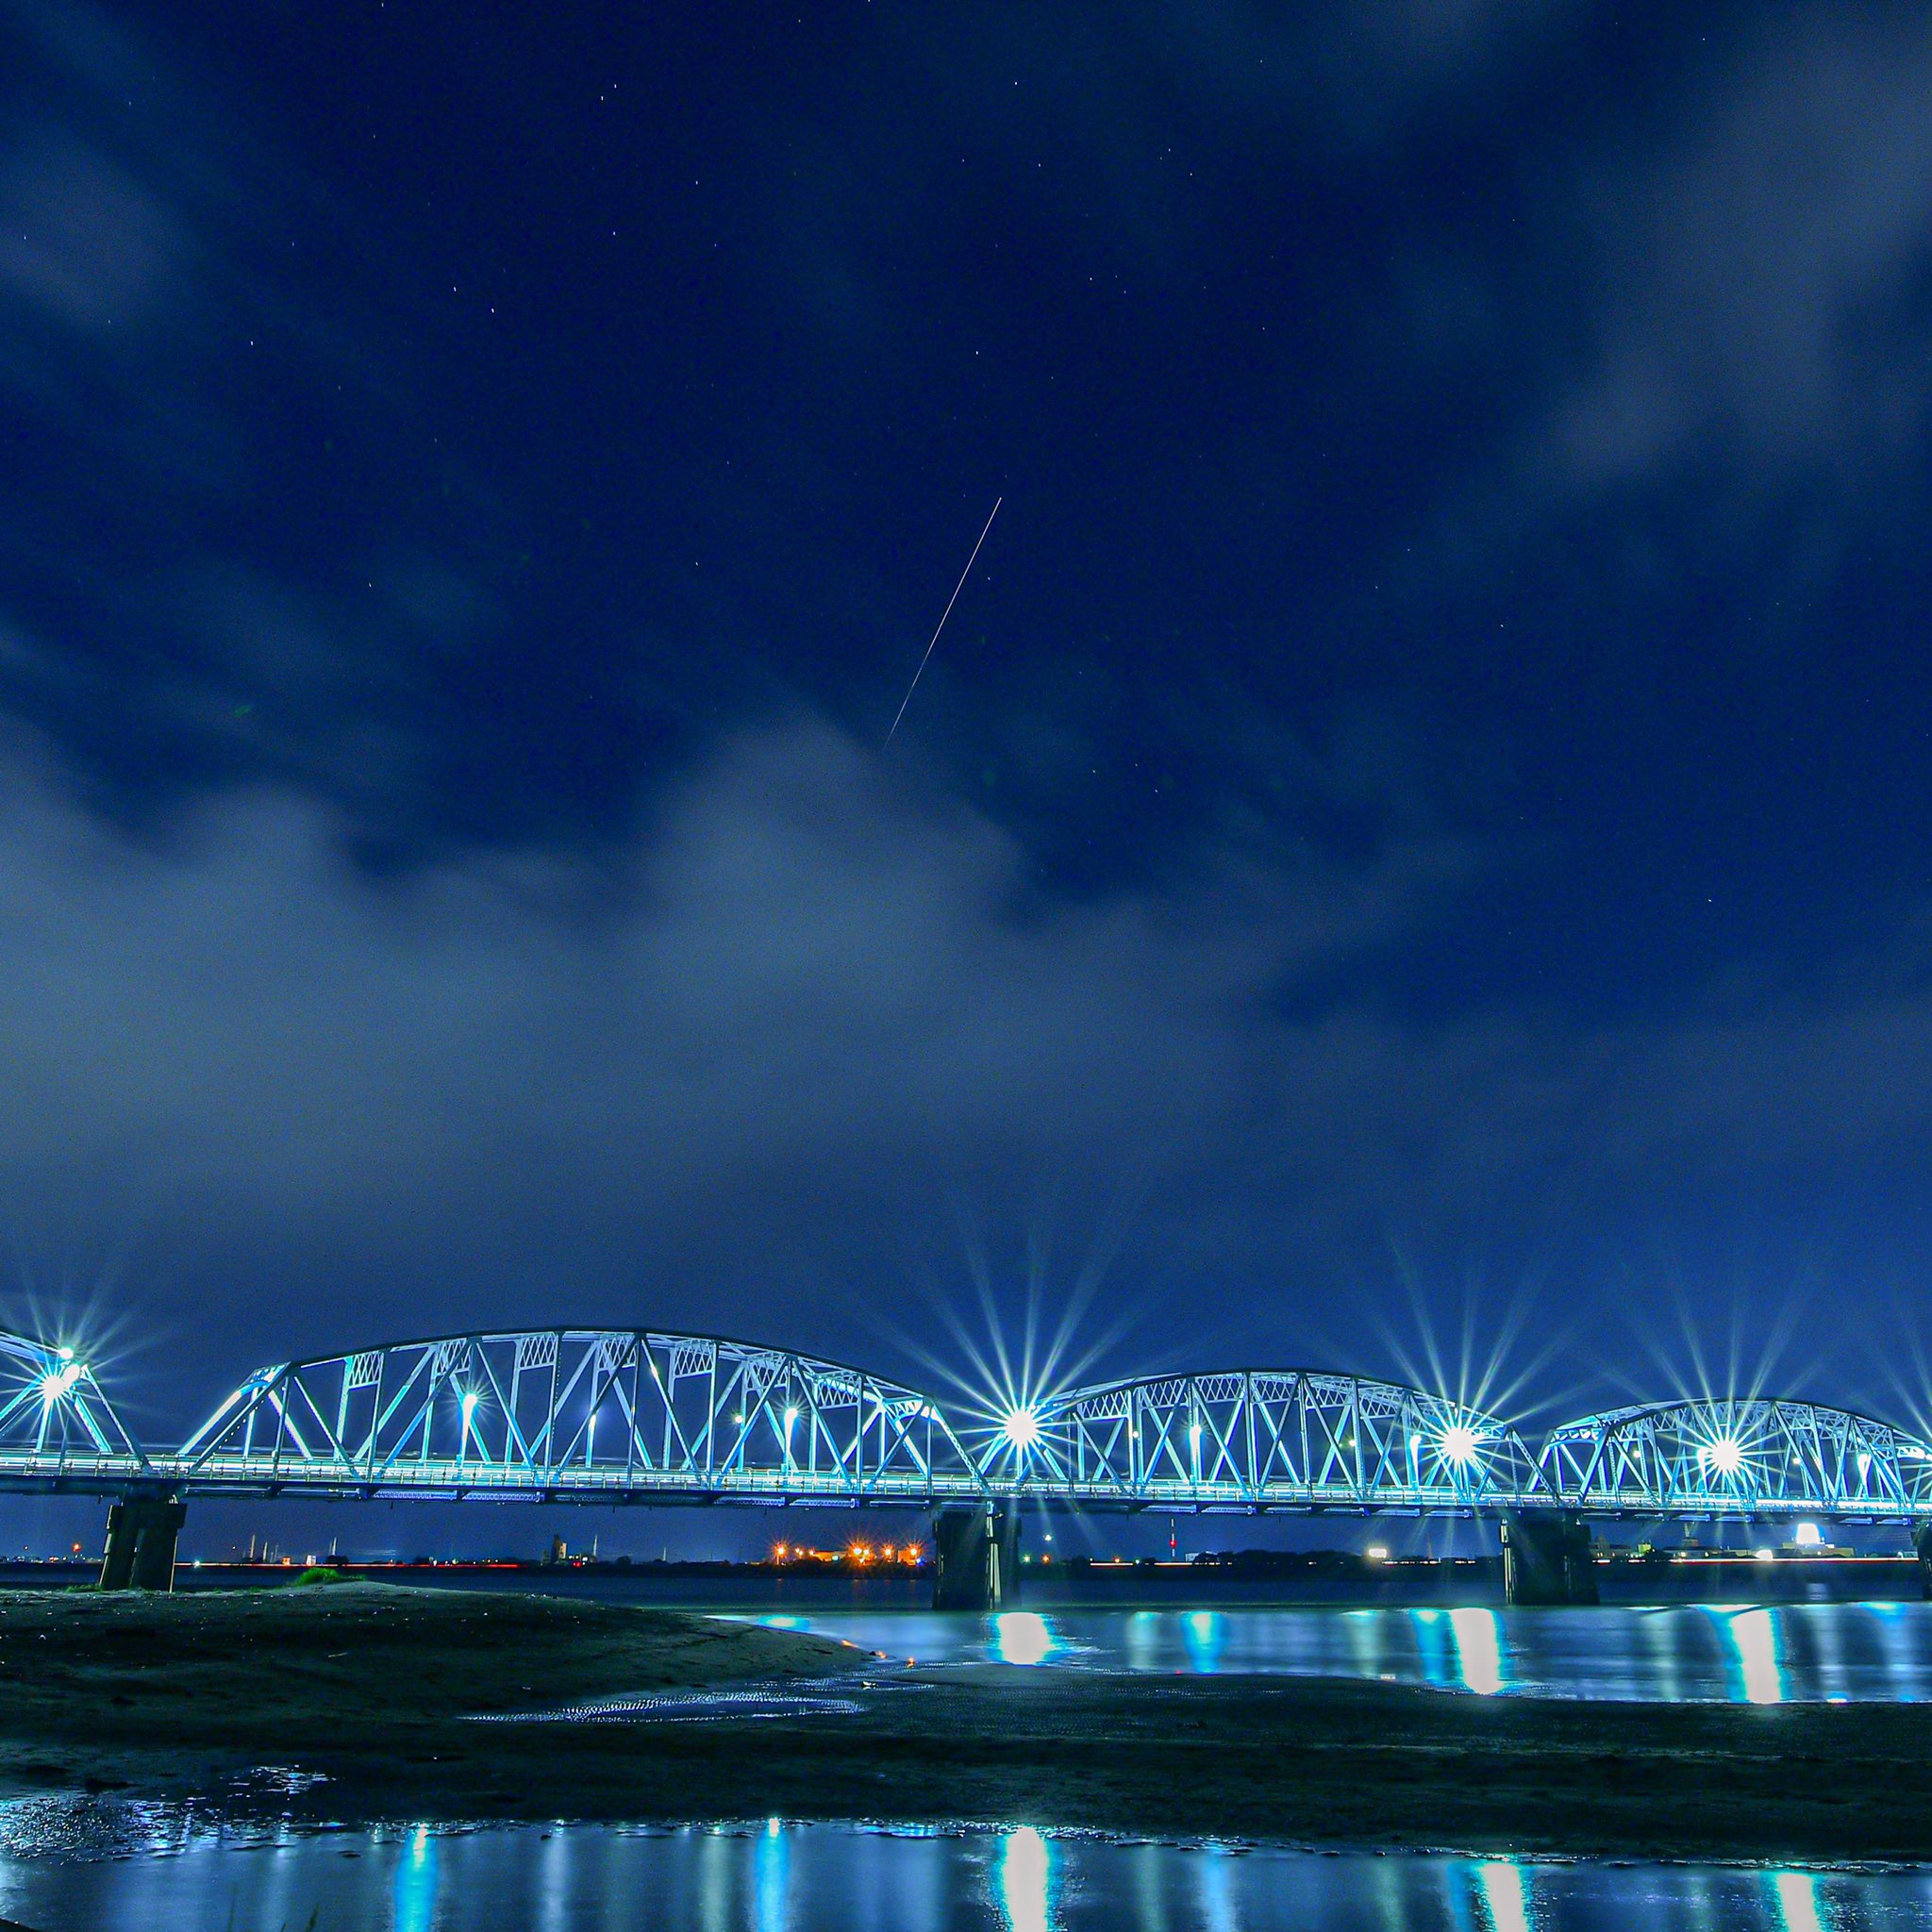 𝑭 𝑳 𝒀 𝑨 吉野川橋とiss 国際宇宙ステーション の光跡 手前の雲がなければなお良かったのに Nikon D850 徳島県 徳島市 夜景 ファインダー越しの私の世界 写真を撮るのが好きな人と繋がりたい 誰かに見せたい風景 橋 吉野川橋 光跡 写真